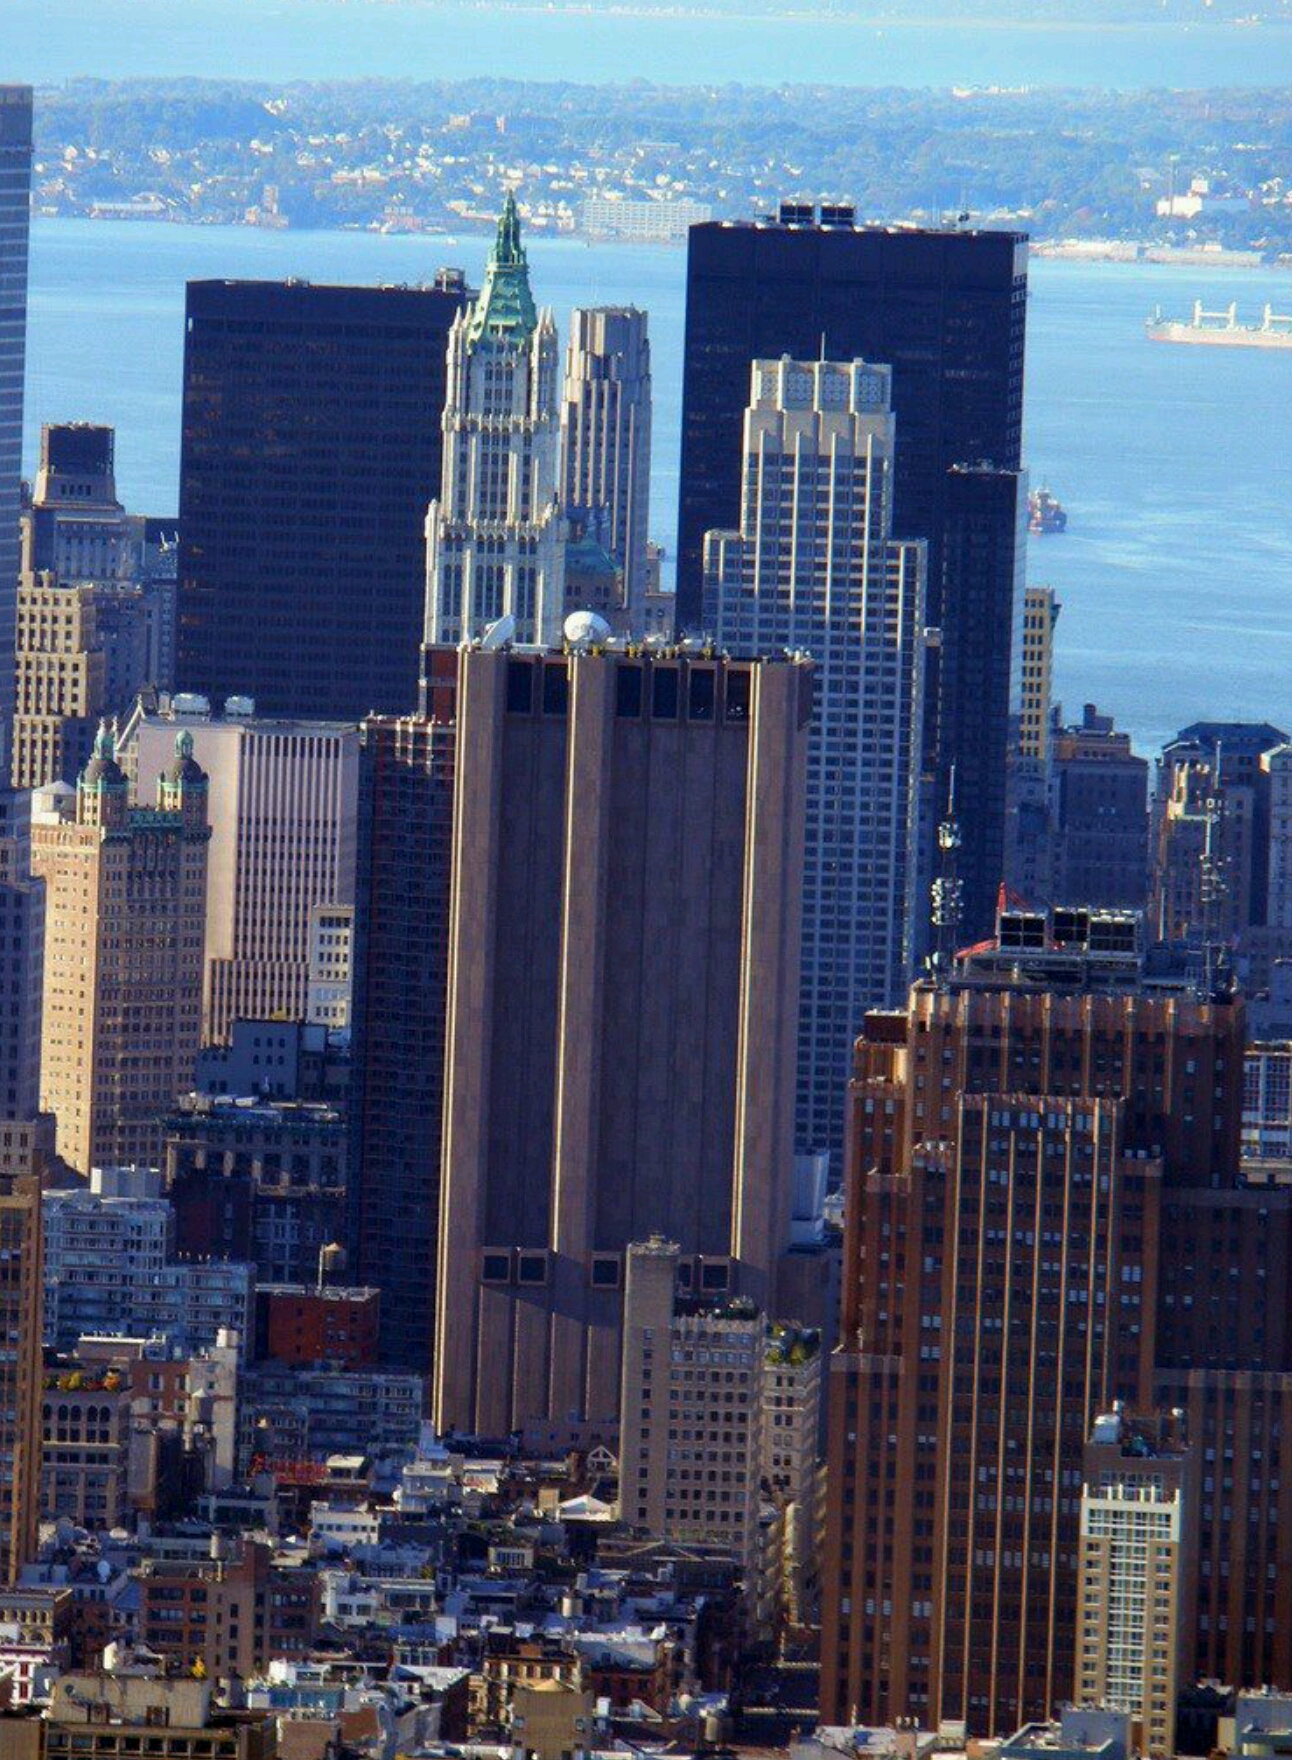 ما هو سر ناطحة السحاب التي تقف وسط مدينة نيويورك دون اي نوافذ او فتحات ؟